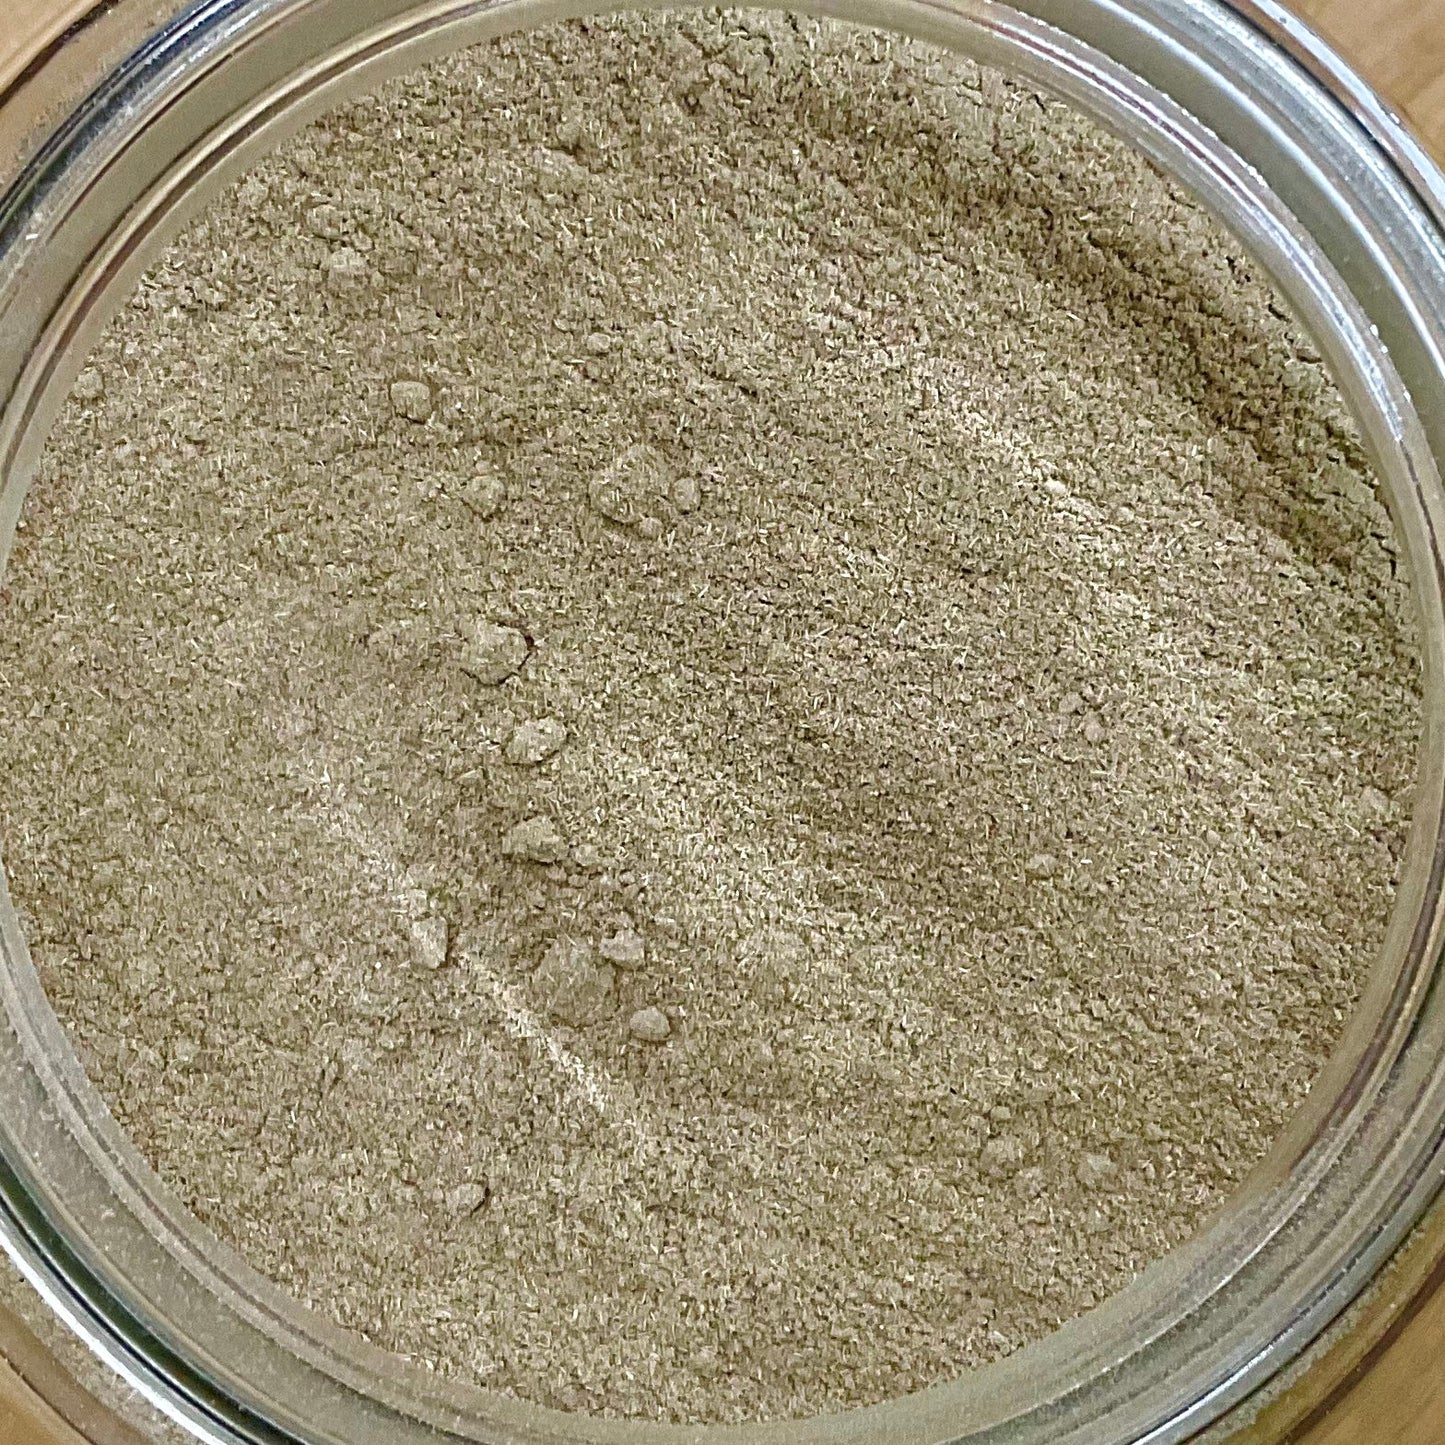 Eleuthero Root Powder Organic 2oz.